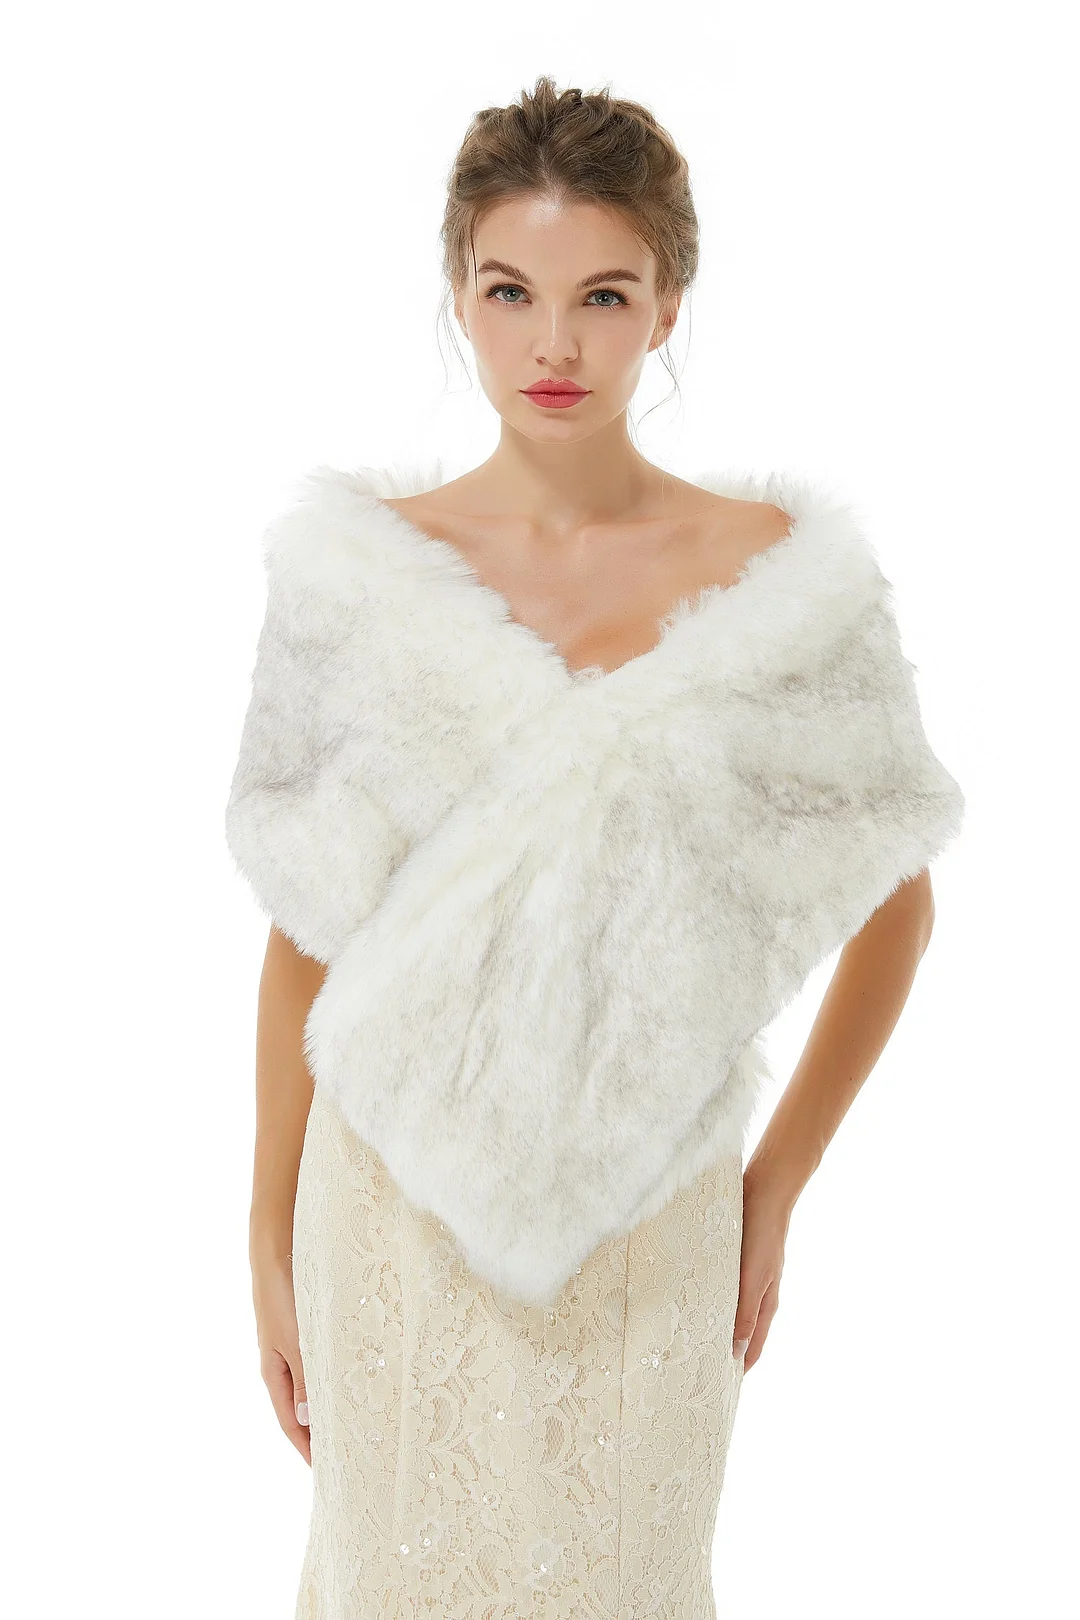 Bellasprom Pretty Ivory Faux Fur Wedding Shawl for Brides Online Bellasprom